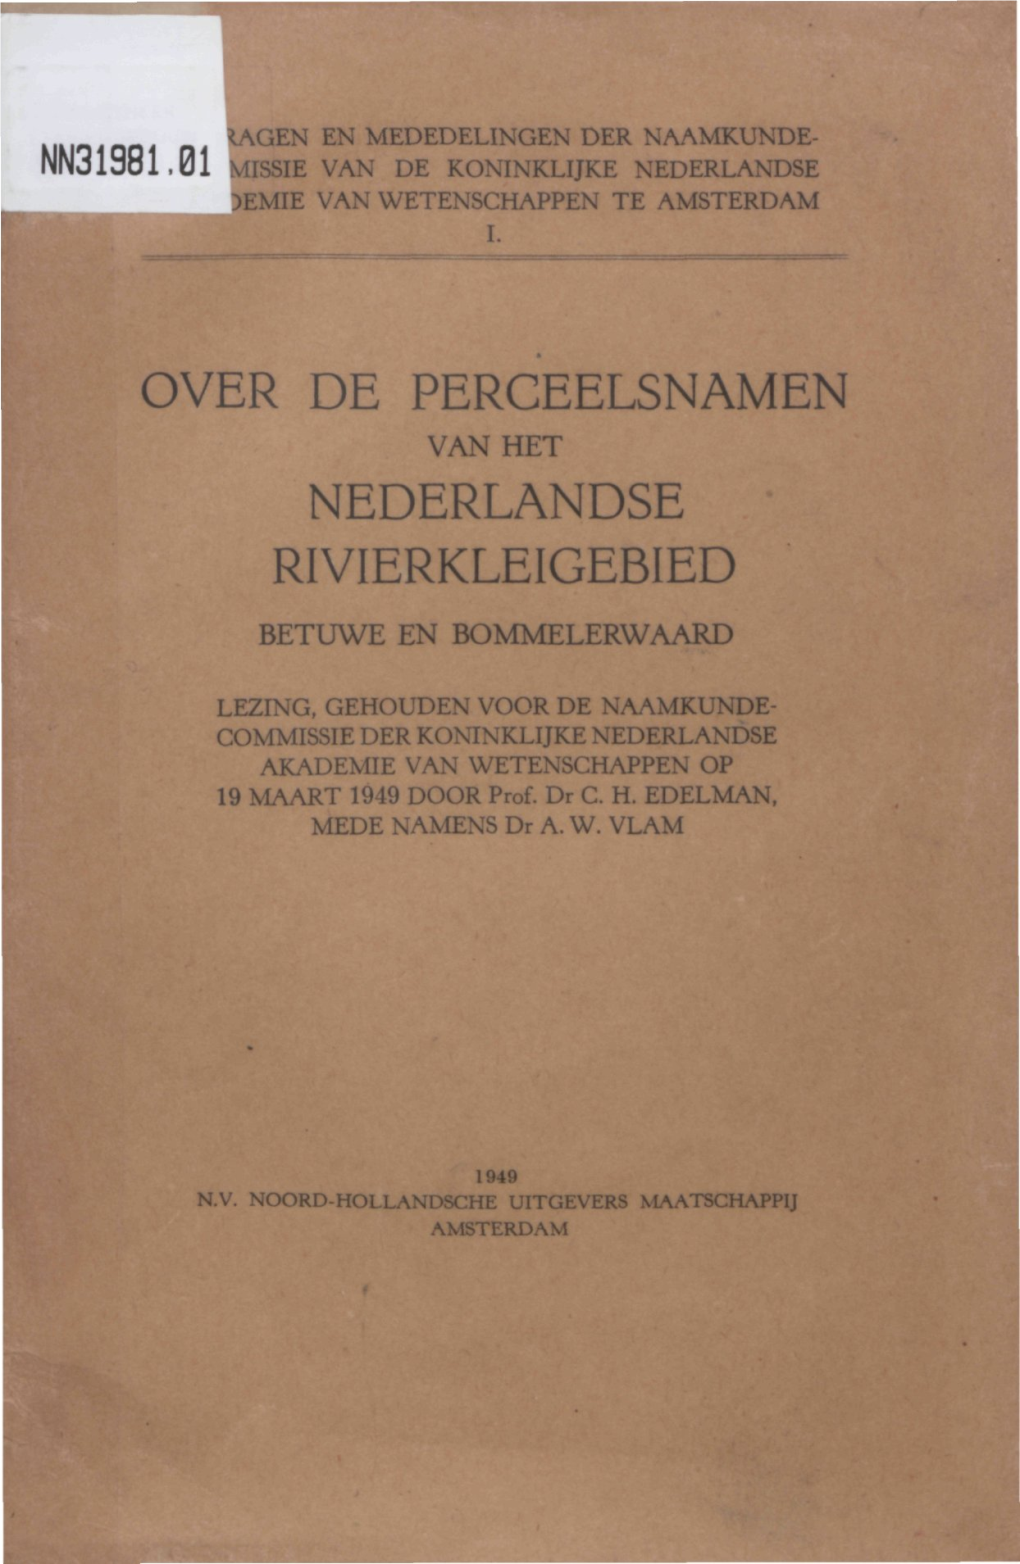 Over De Perceelsnamen Nederlandse Rivierkleigebied